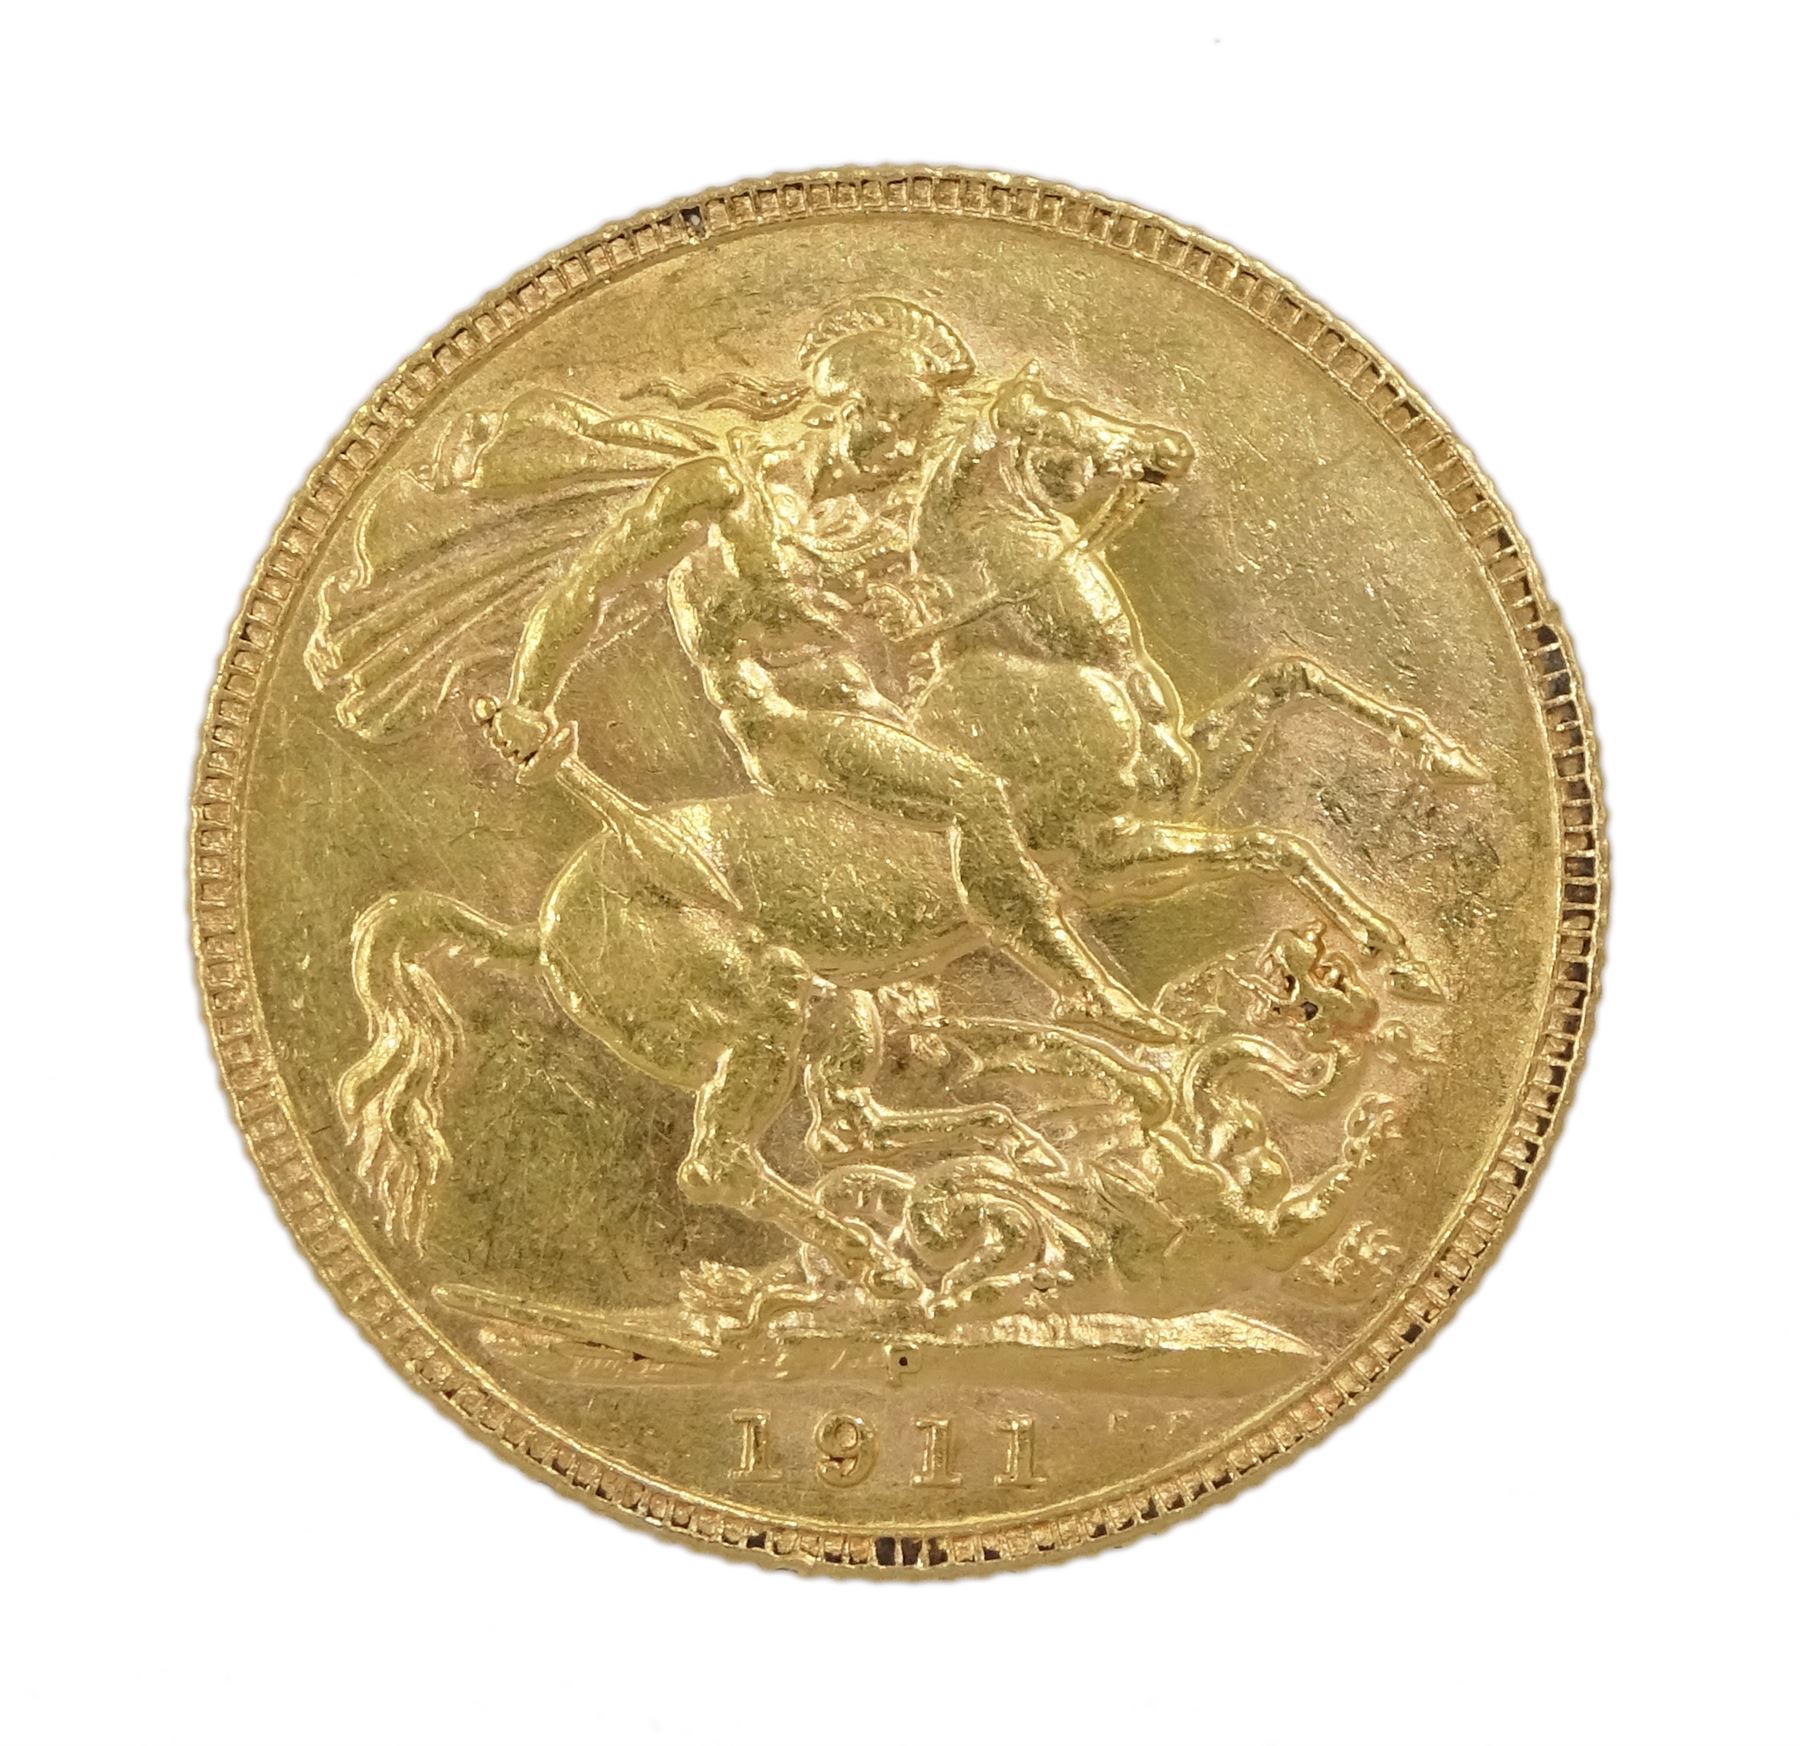 George V 1911 gold full sovereign - Image 2 of 2